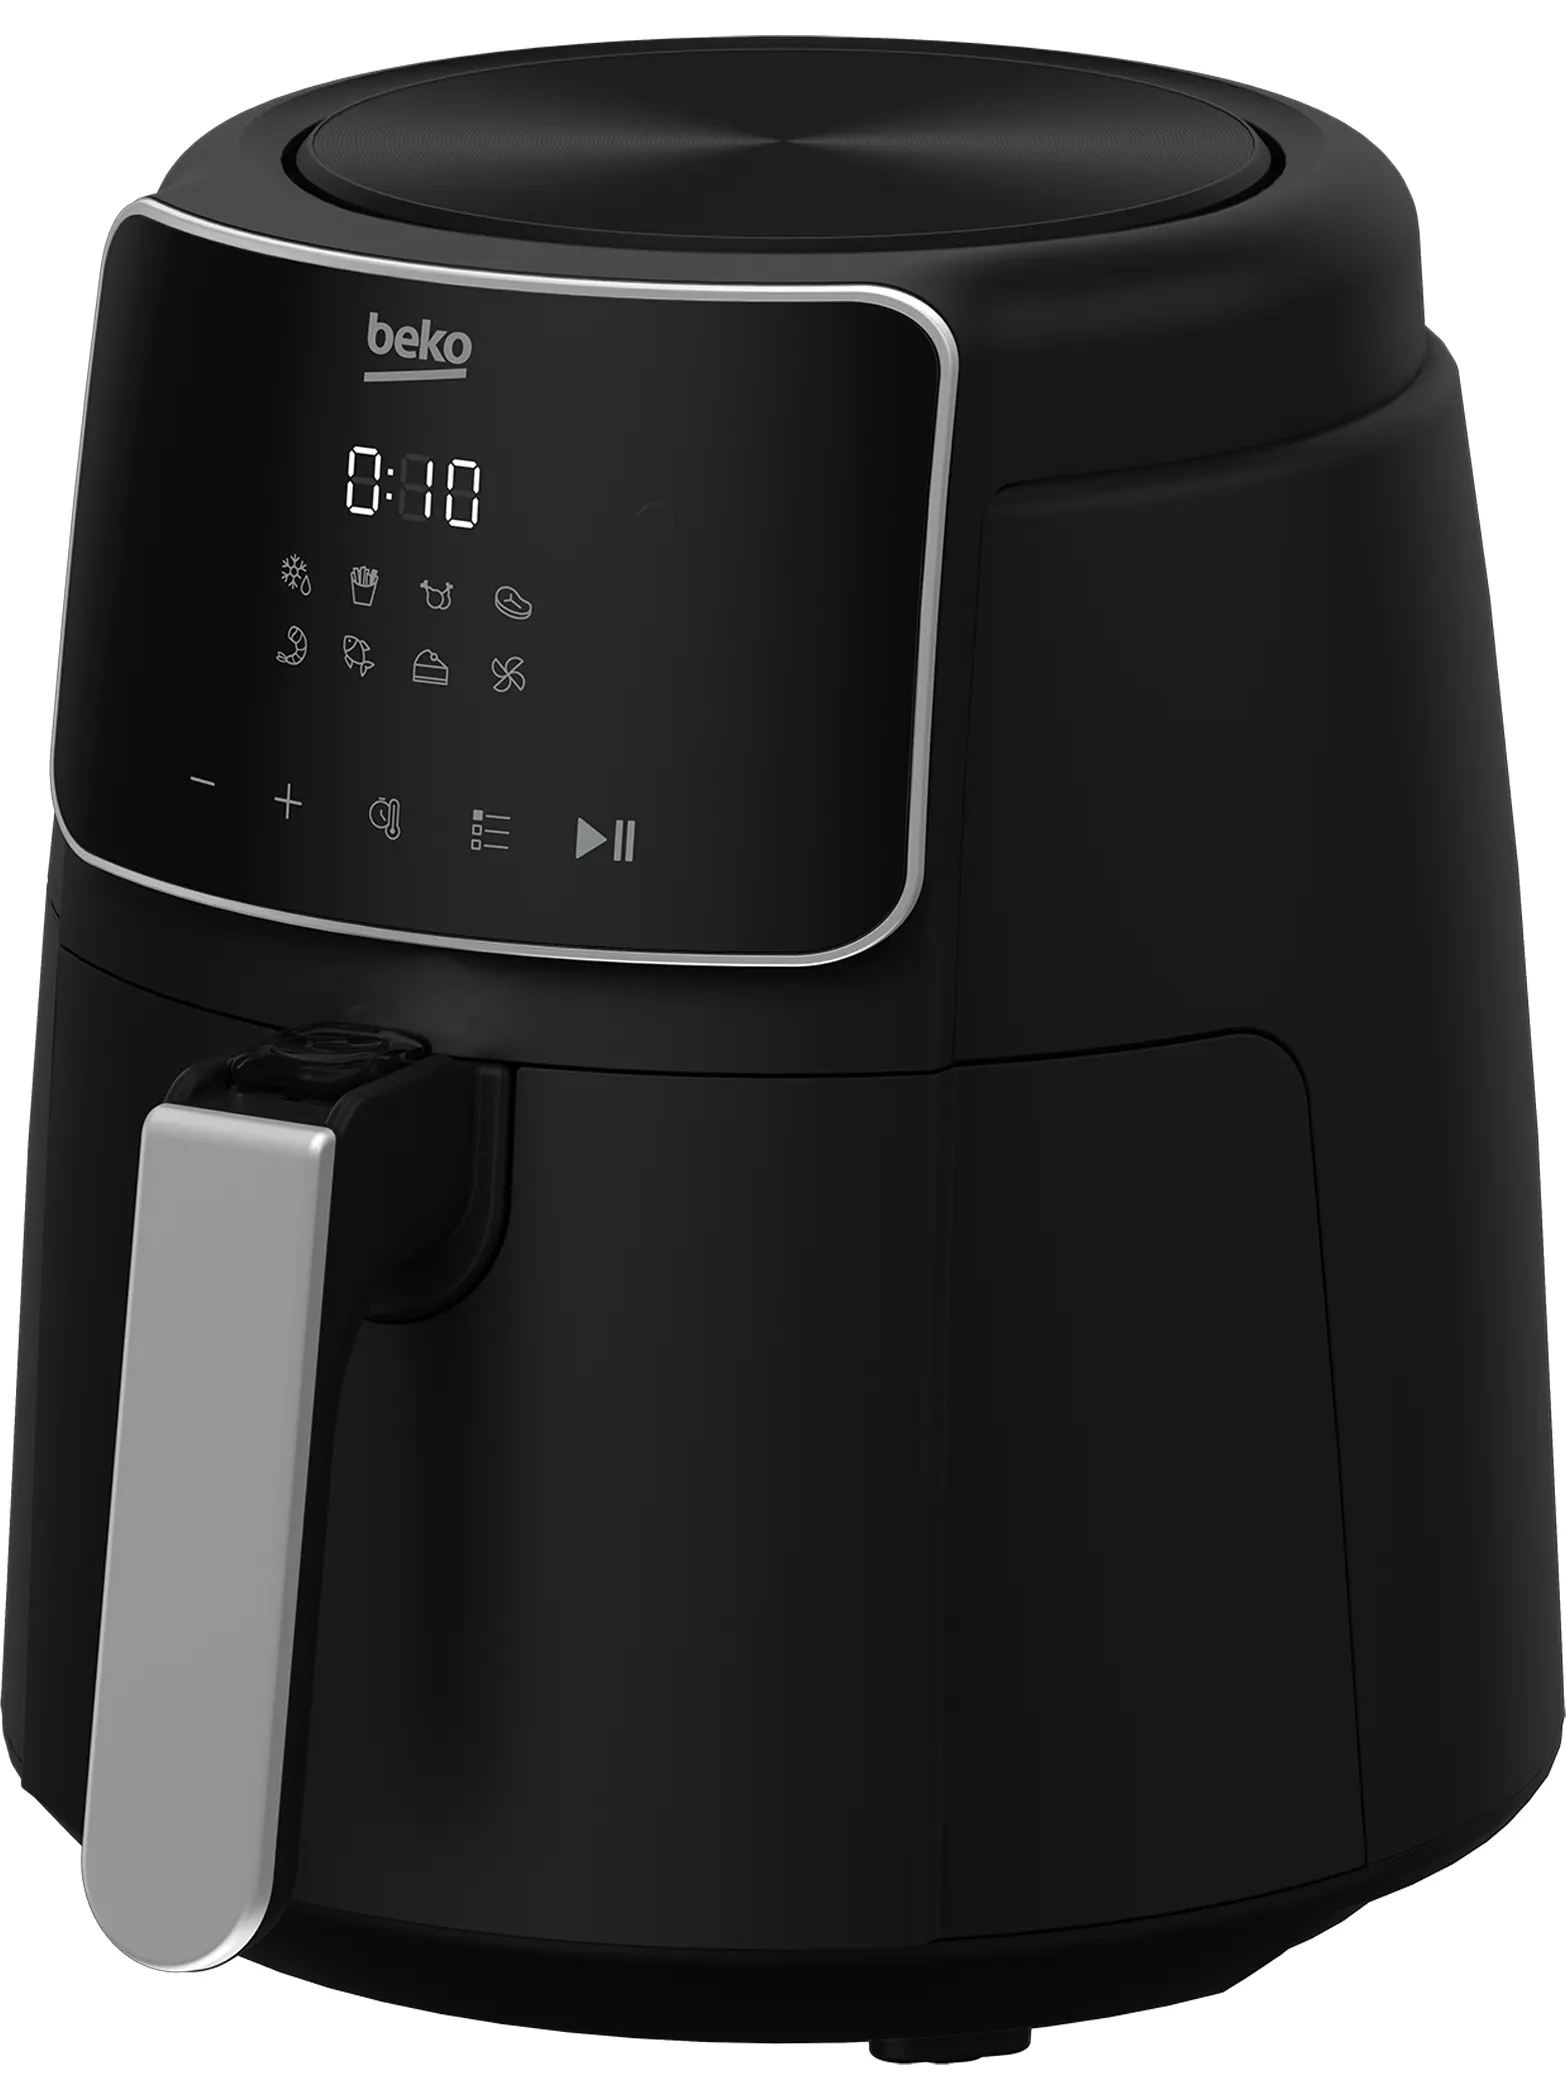 Beko Air Fryer Without Oil, 1500 Watt, 3.9 Liter, Digital Display, Black, FRL 2244 B